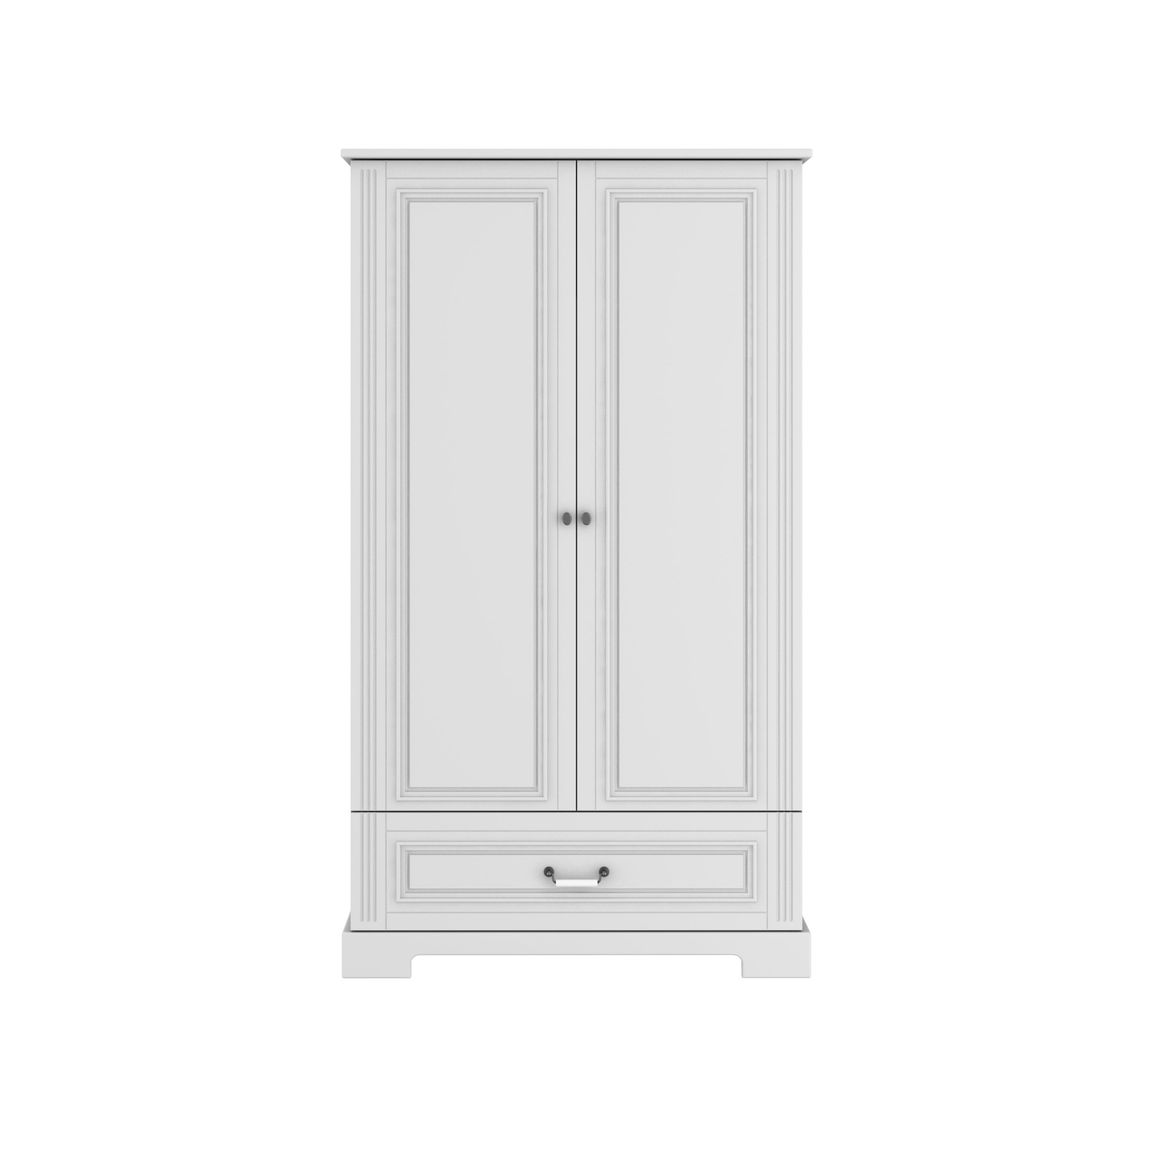 Skriňa Ines elegant white 2-dverová